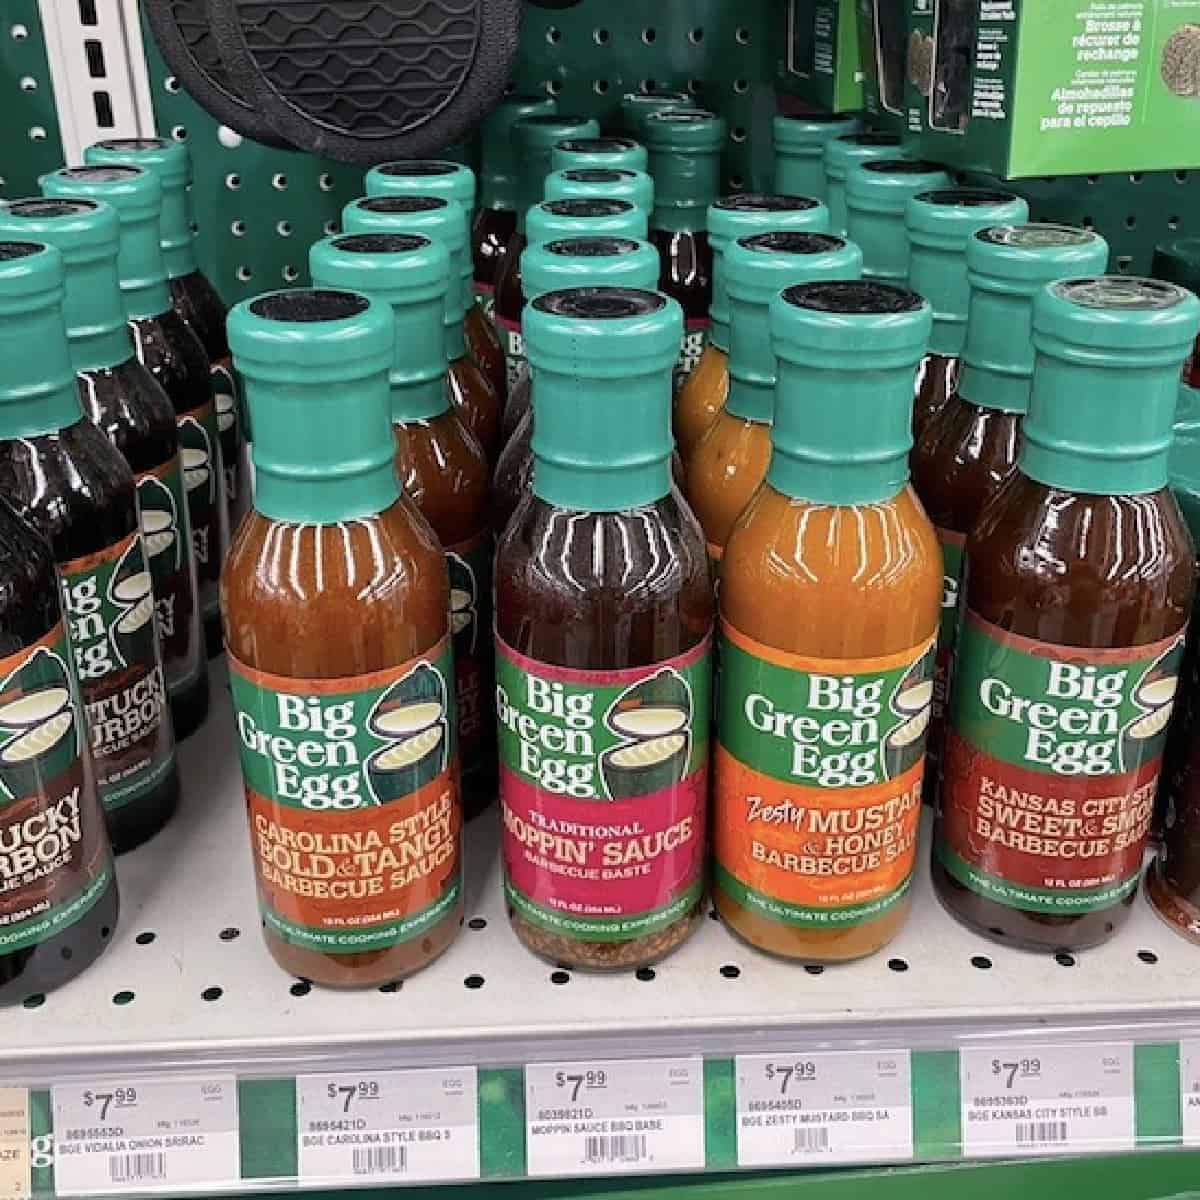 big green egg sauces on display